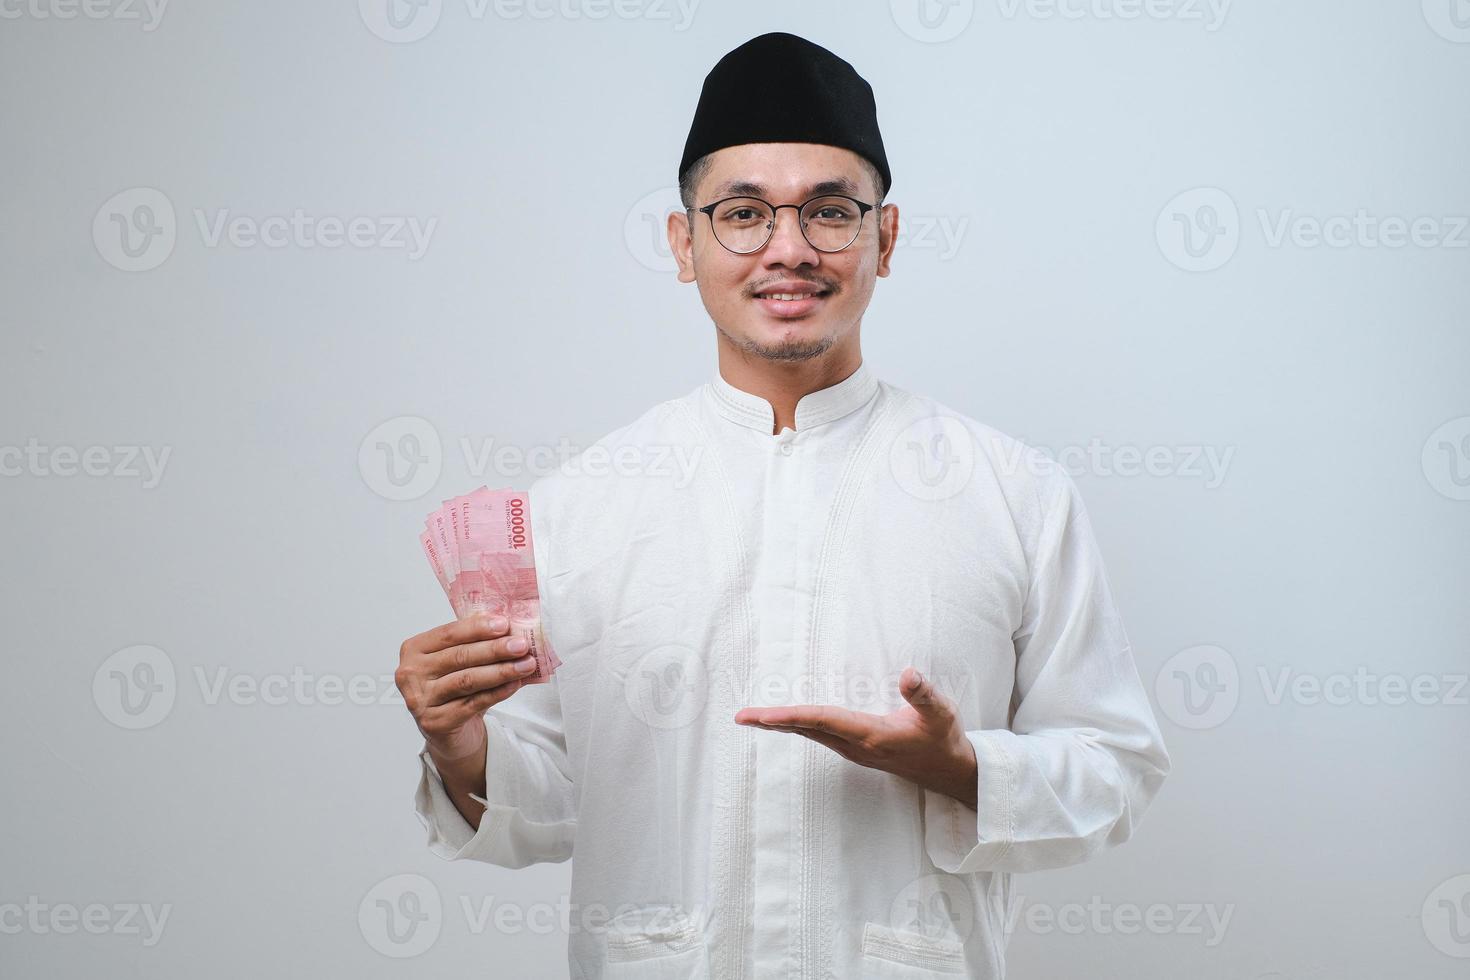 asiatischer muslimischer mann lächelt glücklich, während er papiergeld hält foto